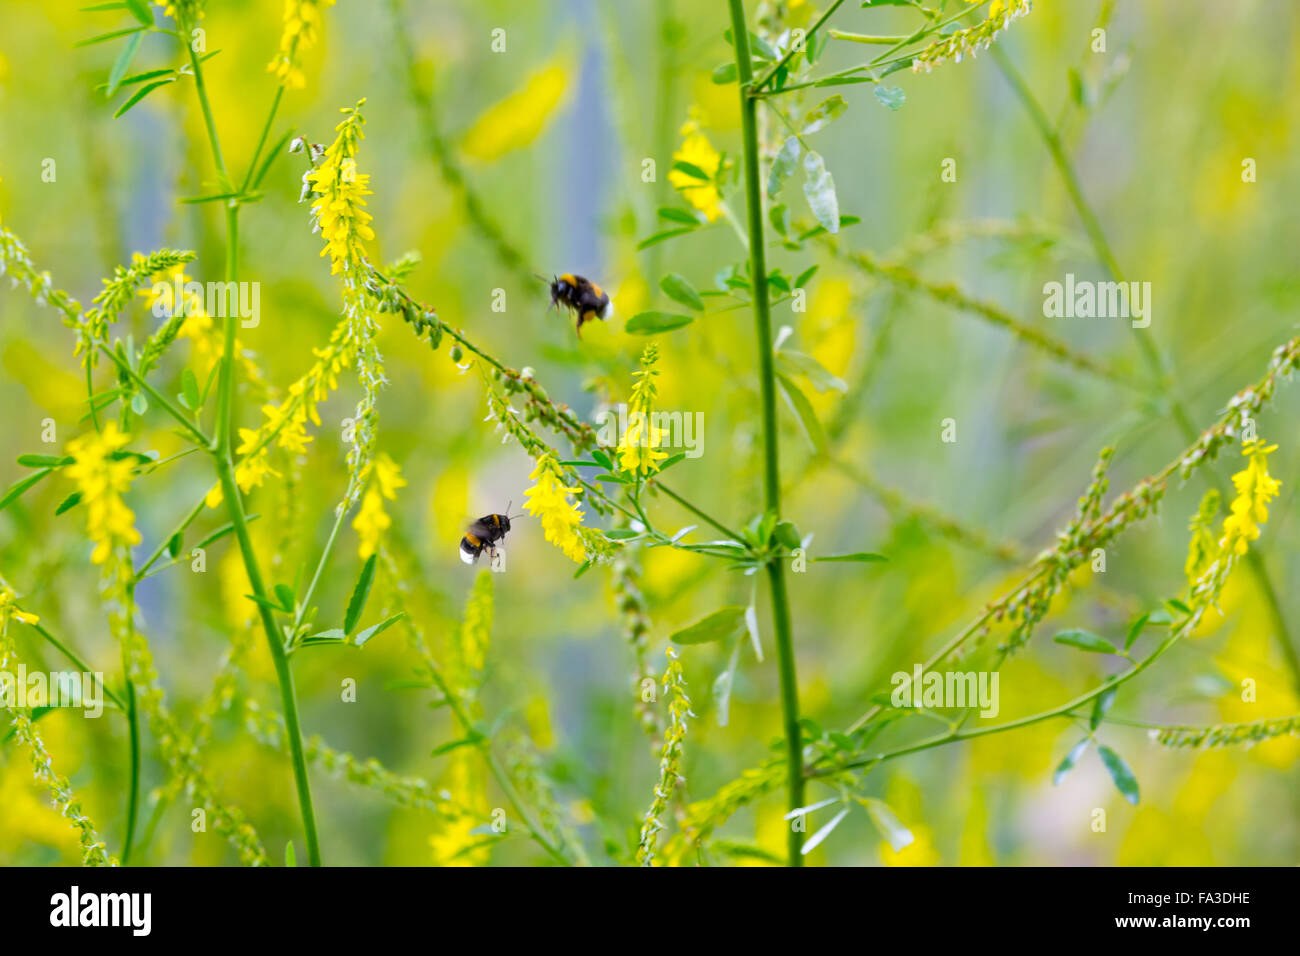 Hummeln sammeln Nektar auf die gelben Blüten auf einem Hintergrund von unscharfen gelben Blüten. Kleine Schärfentiefe Stockfoto